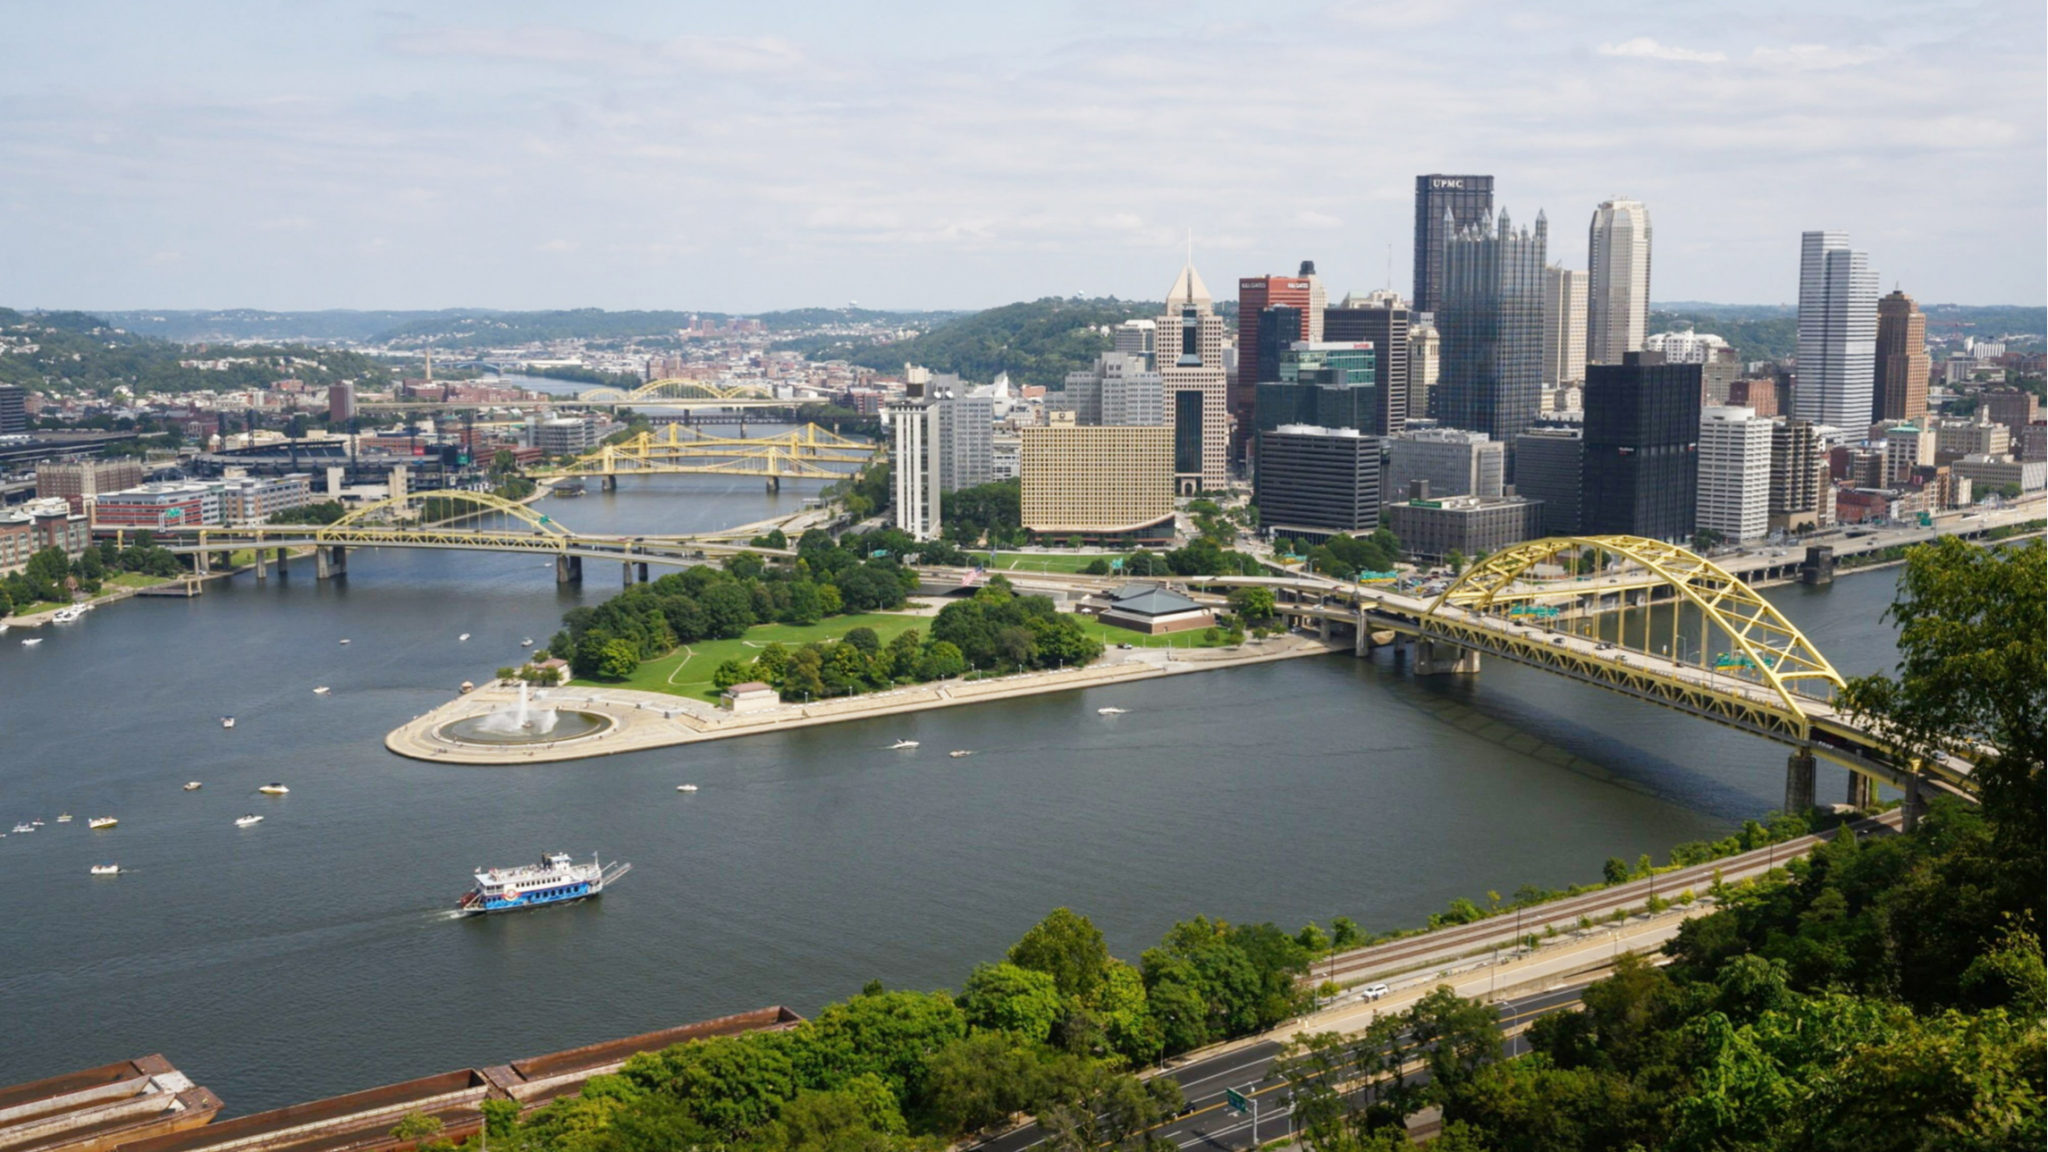 Rustbelt renaissance: Pittsburgh becomes an FDI standout